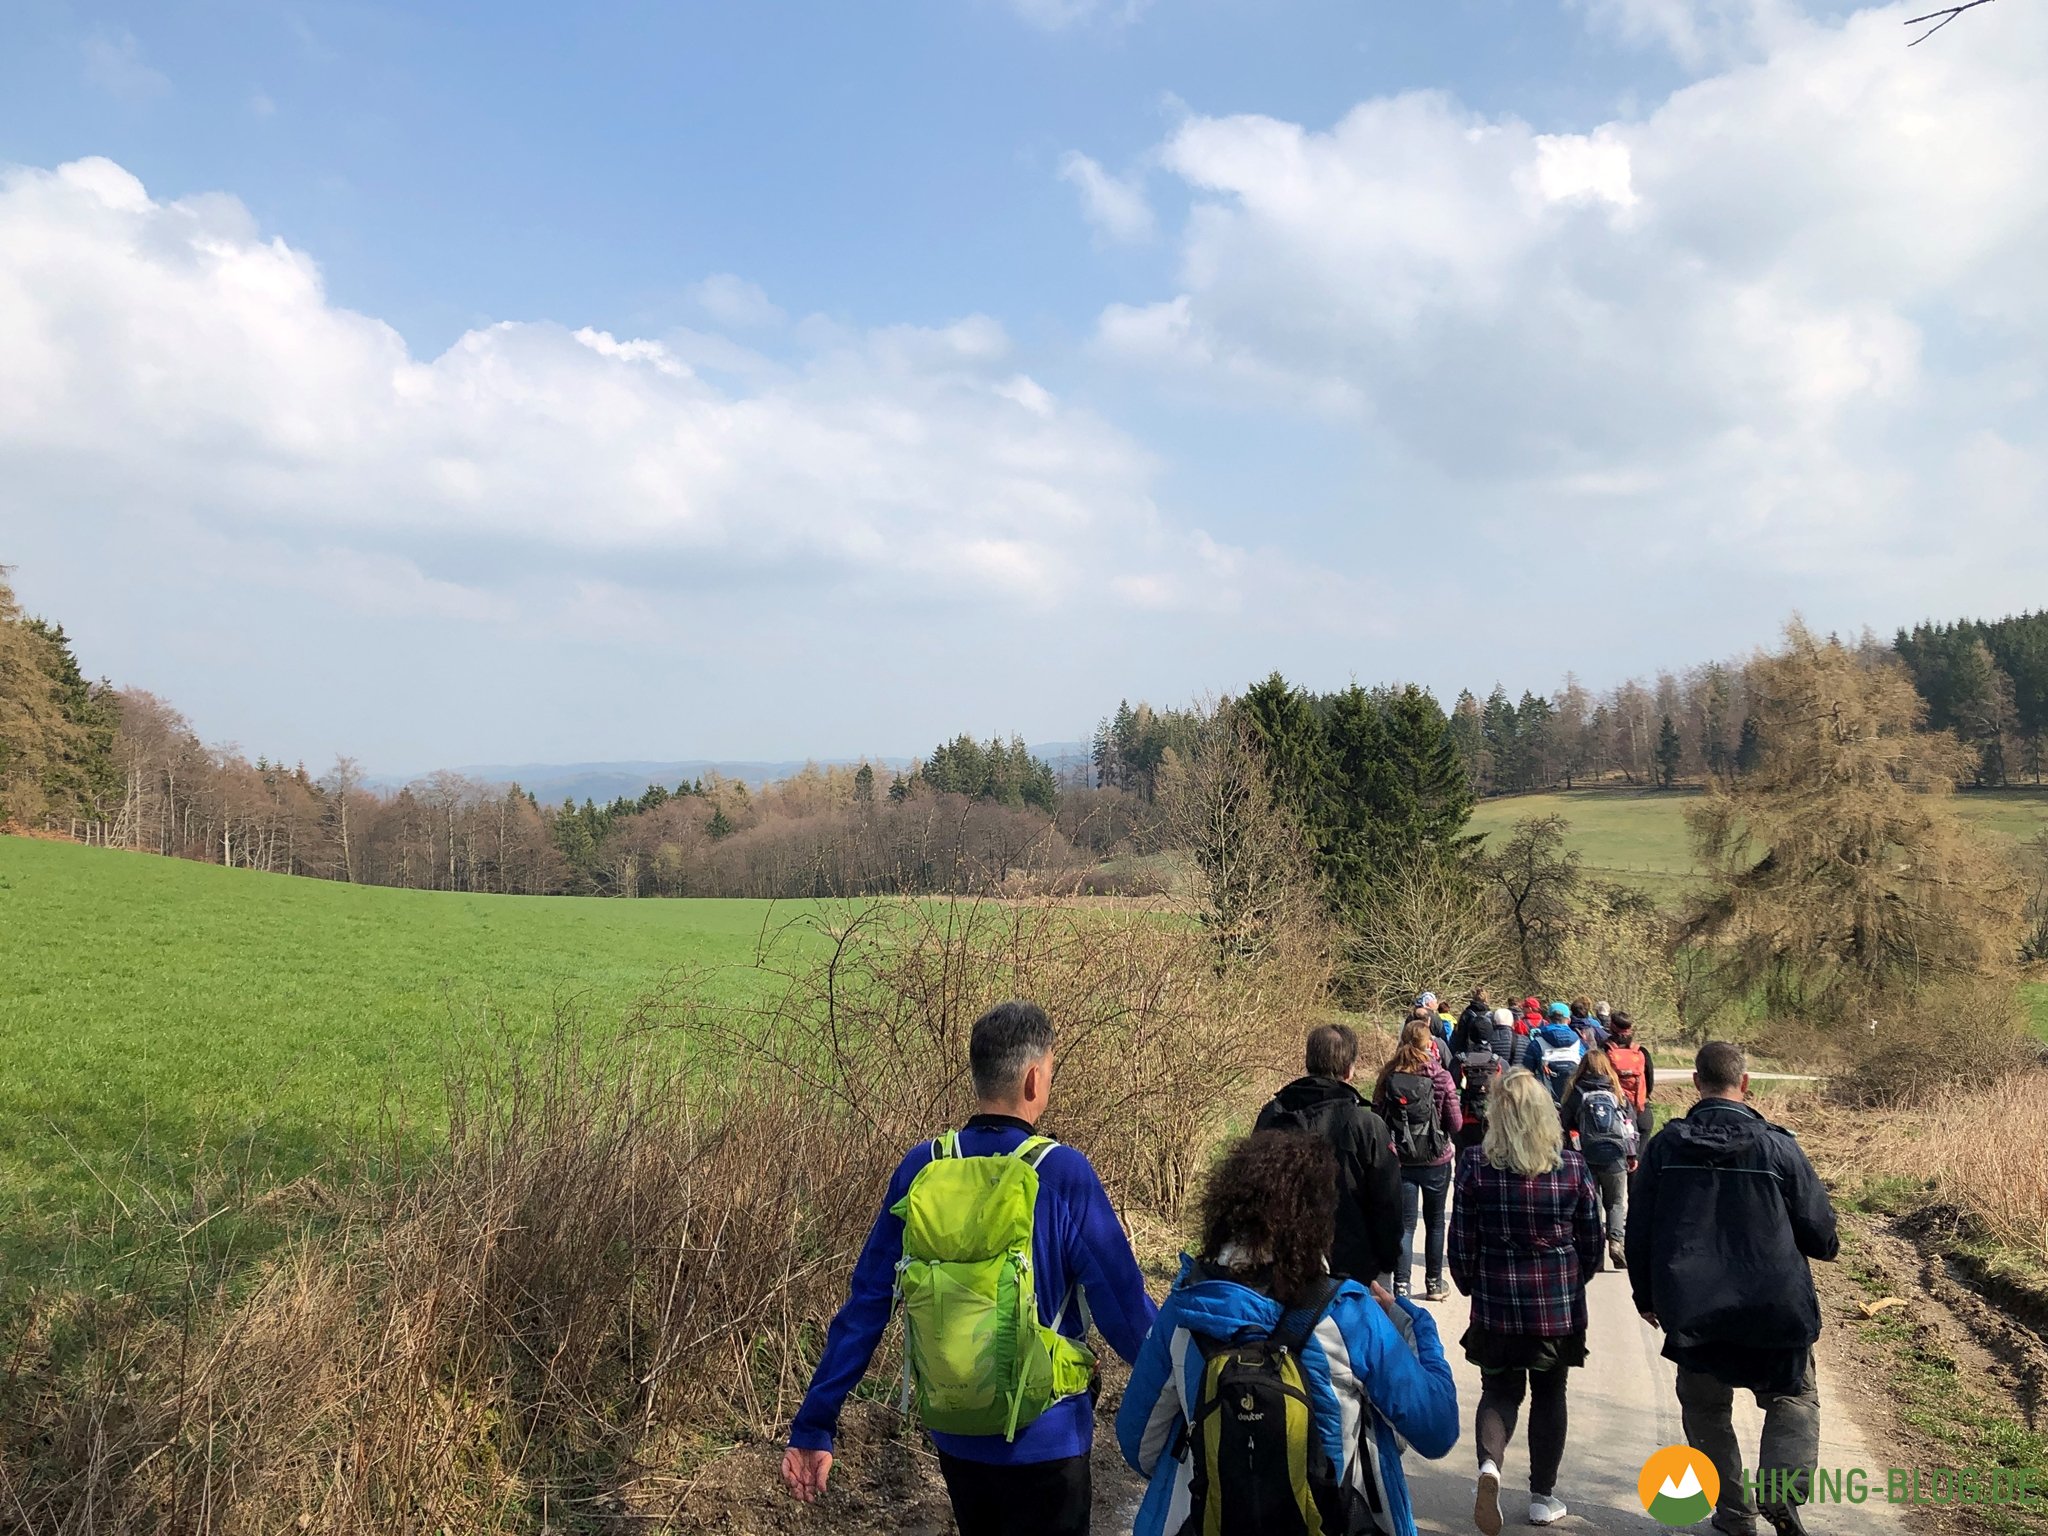 Hiking Barcamp 2019 am Diemelsee und in Willingen in drei Hashtags